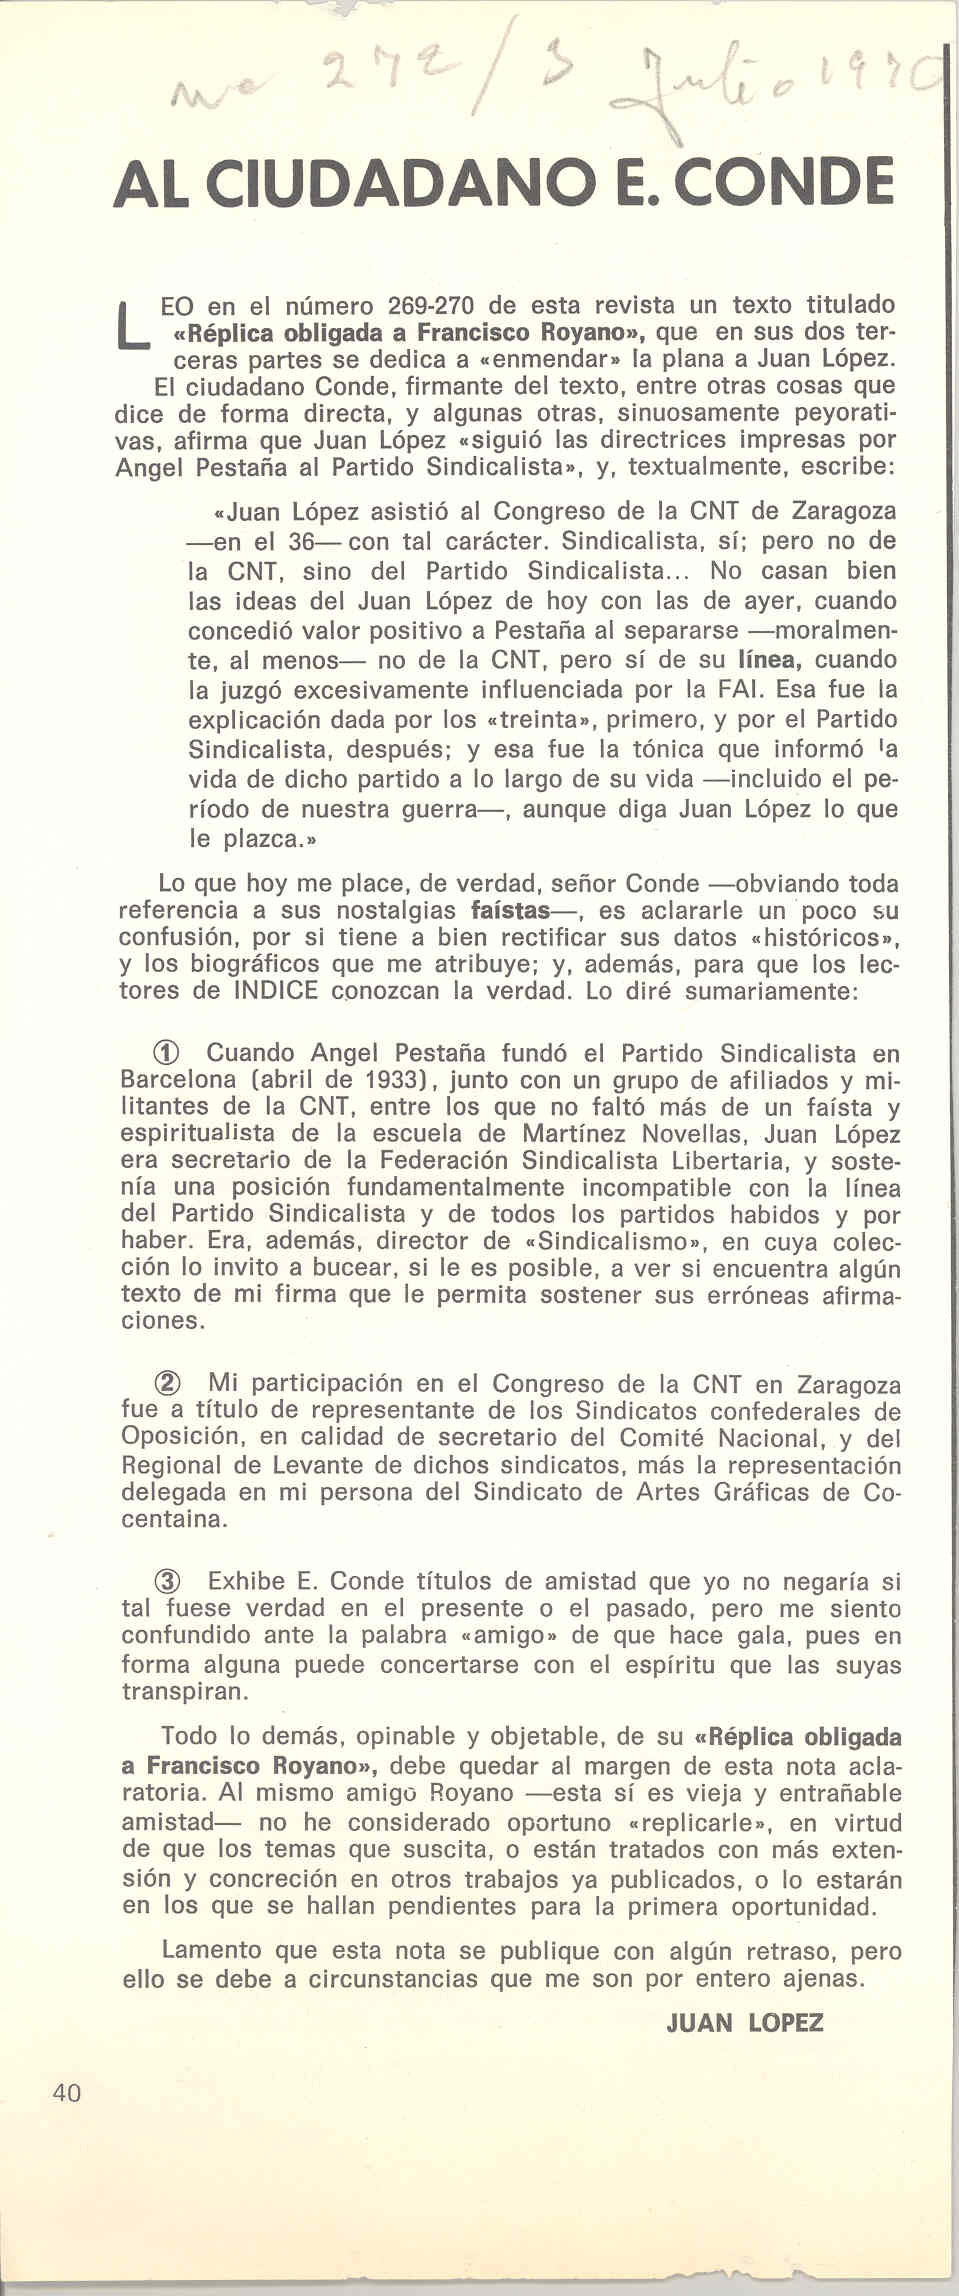 Al ciudadano E. Conde. Artículo contestando a E. Conde, el cual escribió un artículo afirmando que Juan López siguió las directrices impresas por Ángel Pestaña al Partido Sindicalista.